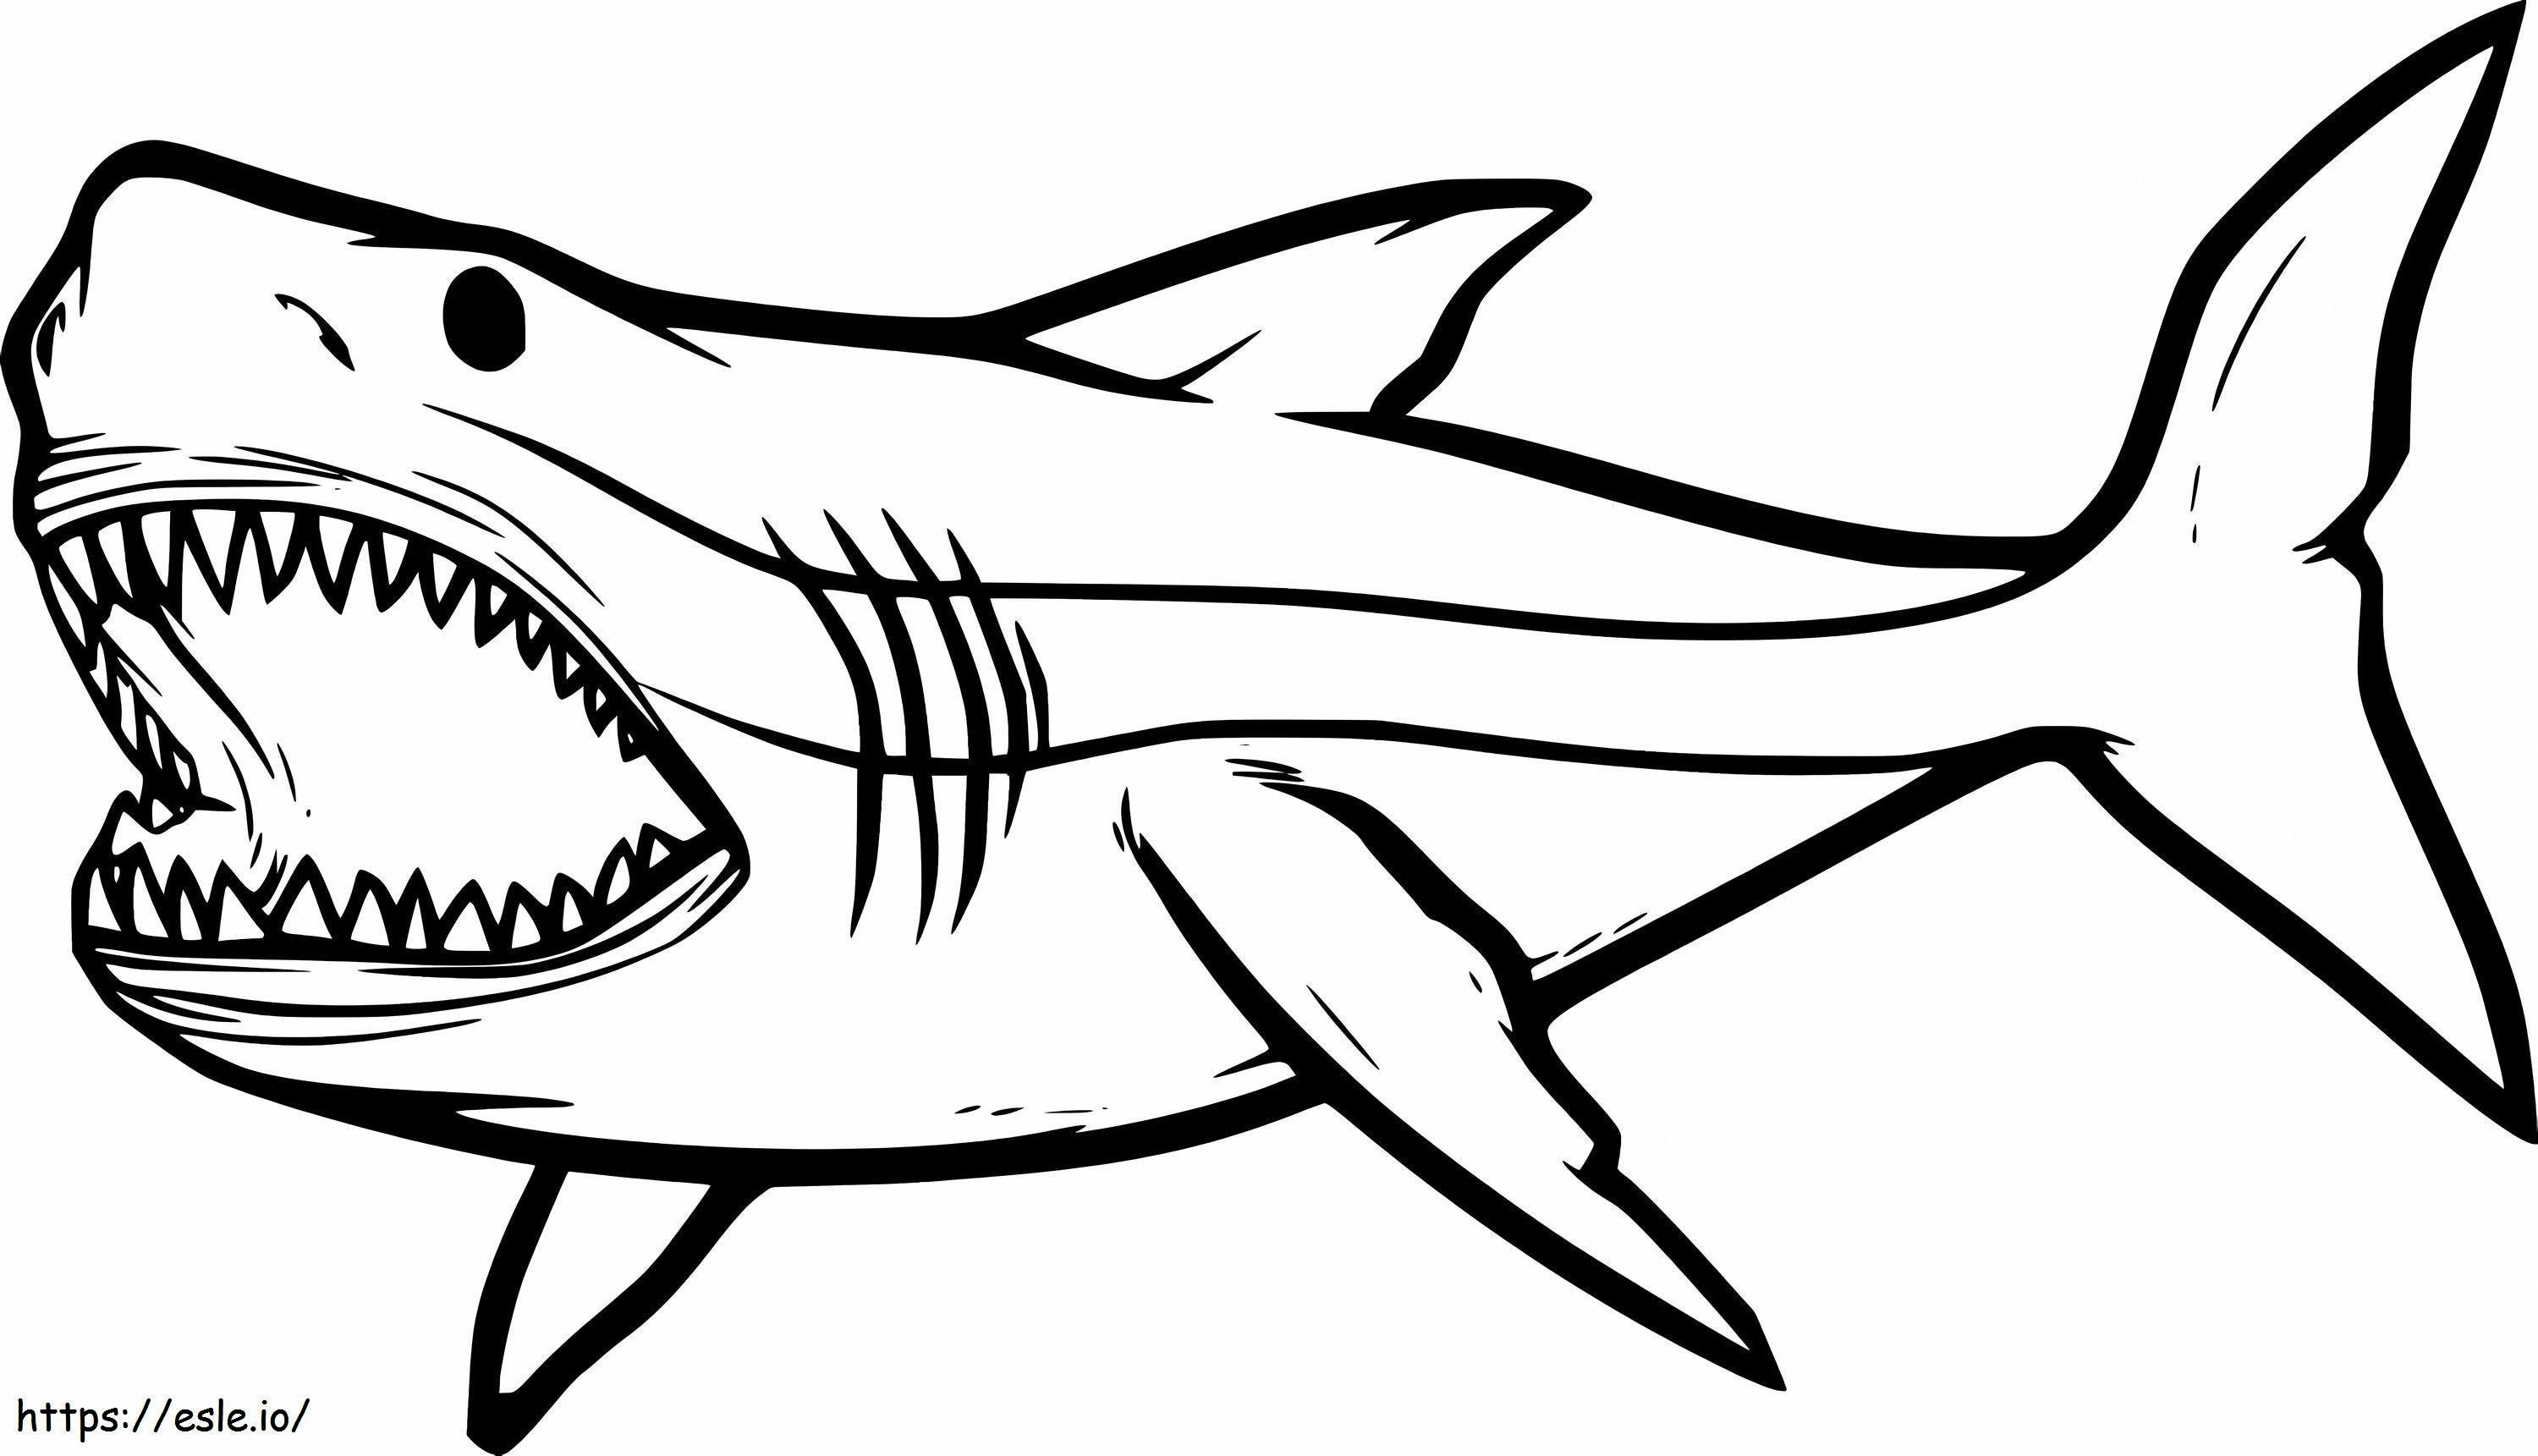 Dibujo De Tiburón para colorear